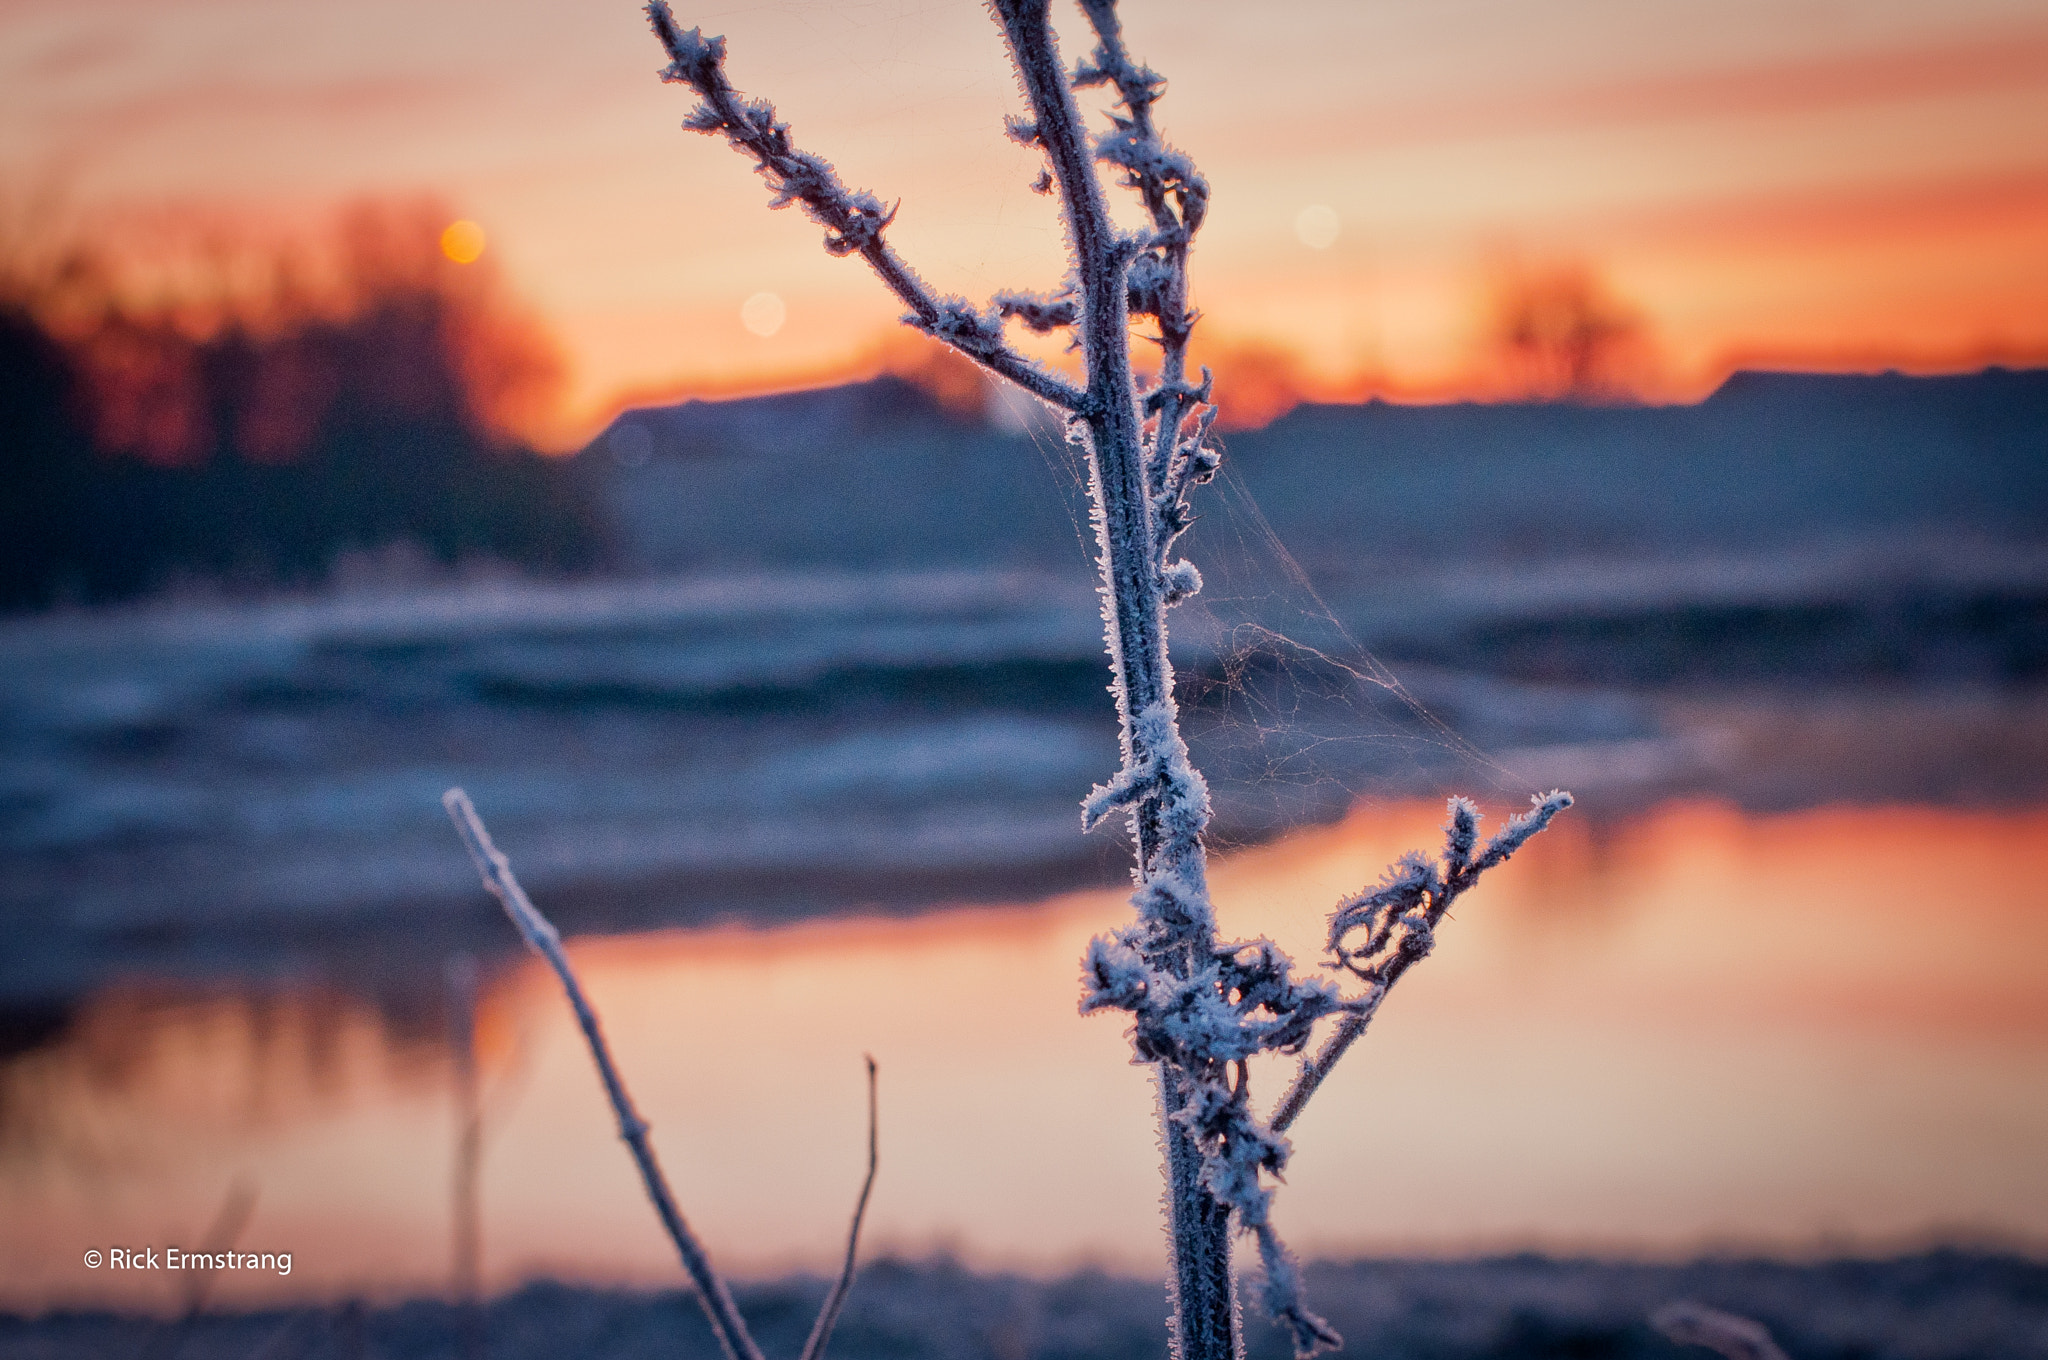 Nikon D90 sample photo. Frosty sunset photography